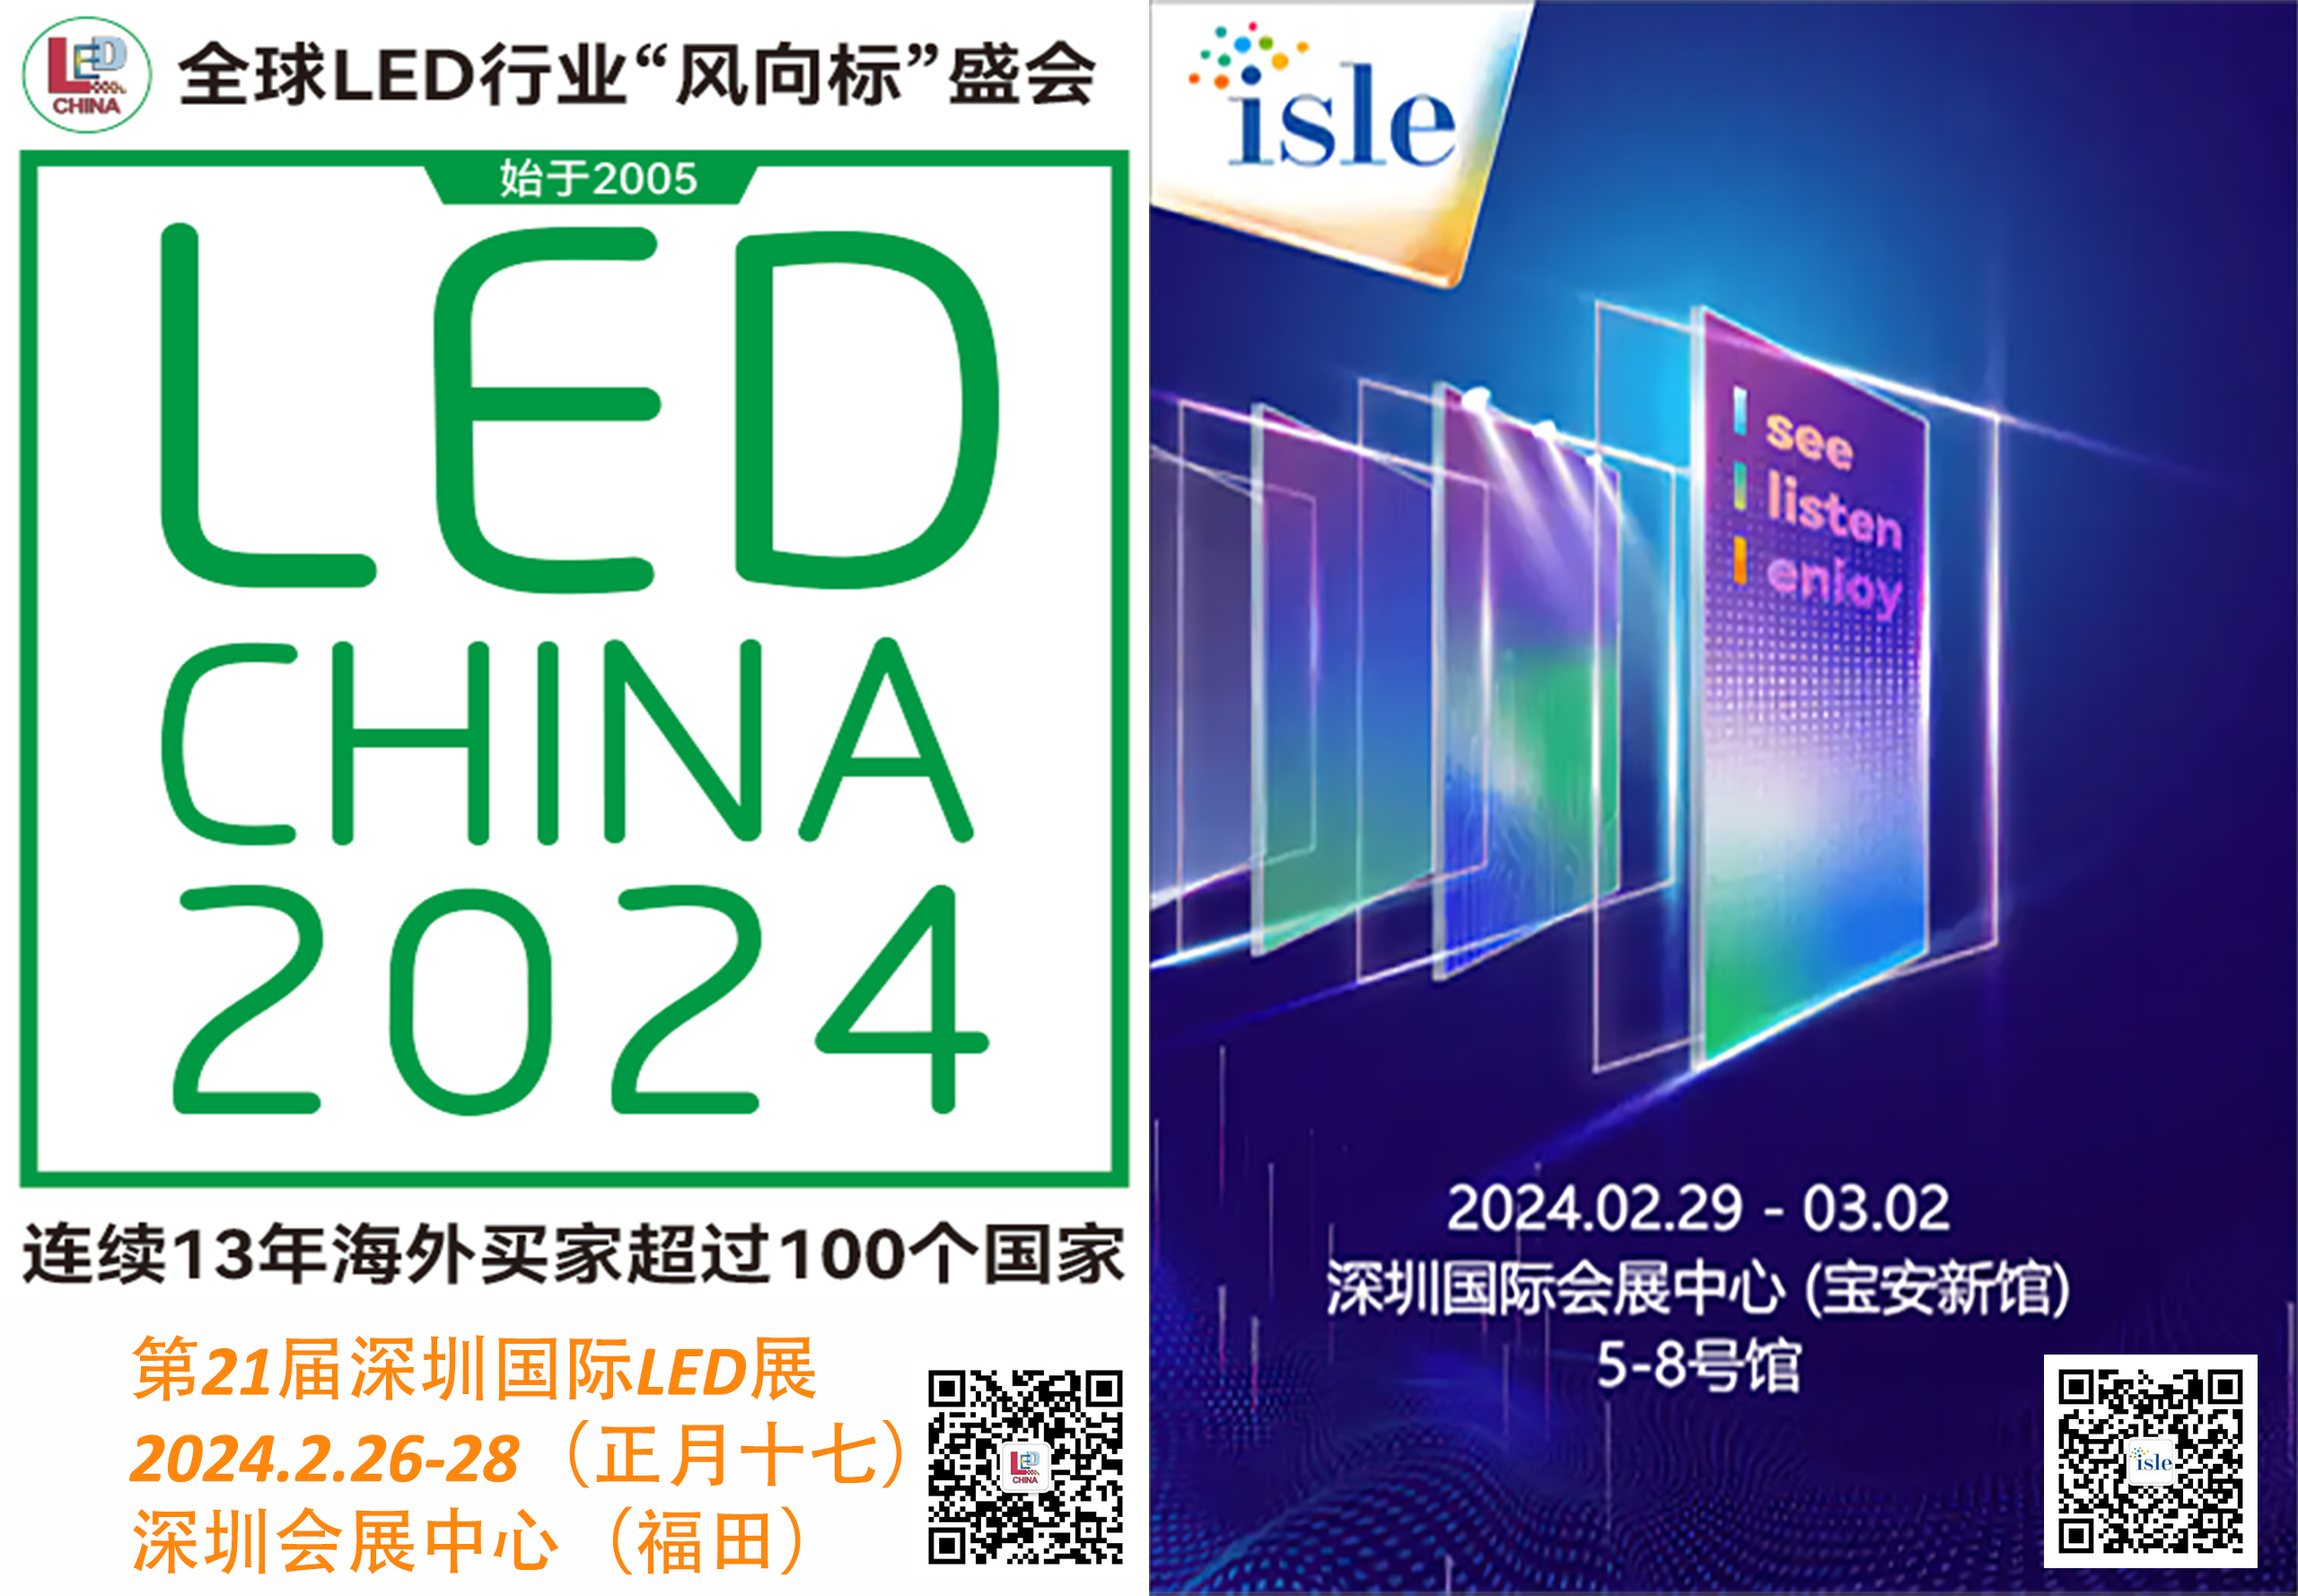 LED, ISLE zeigt die neuesten LED- und Smart-Display-Technologien